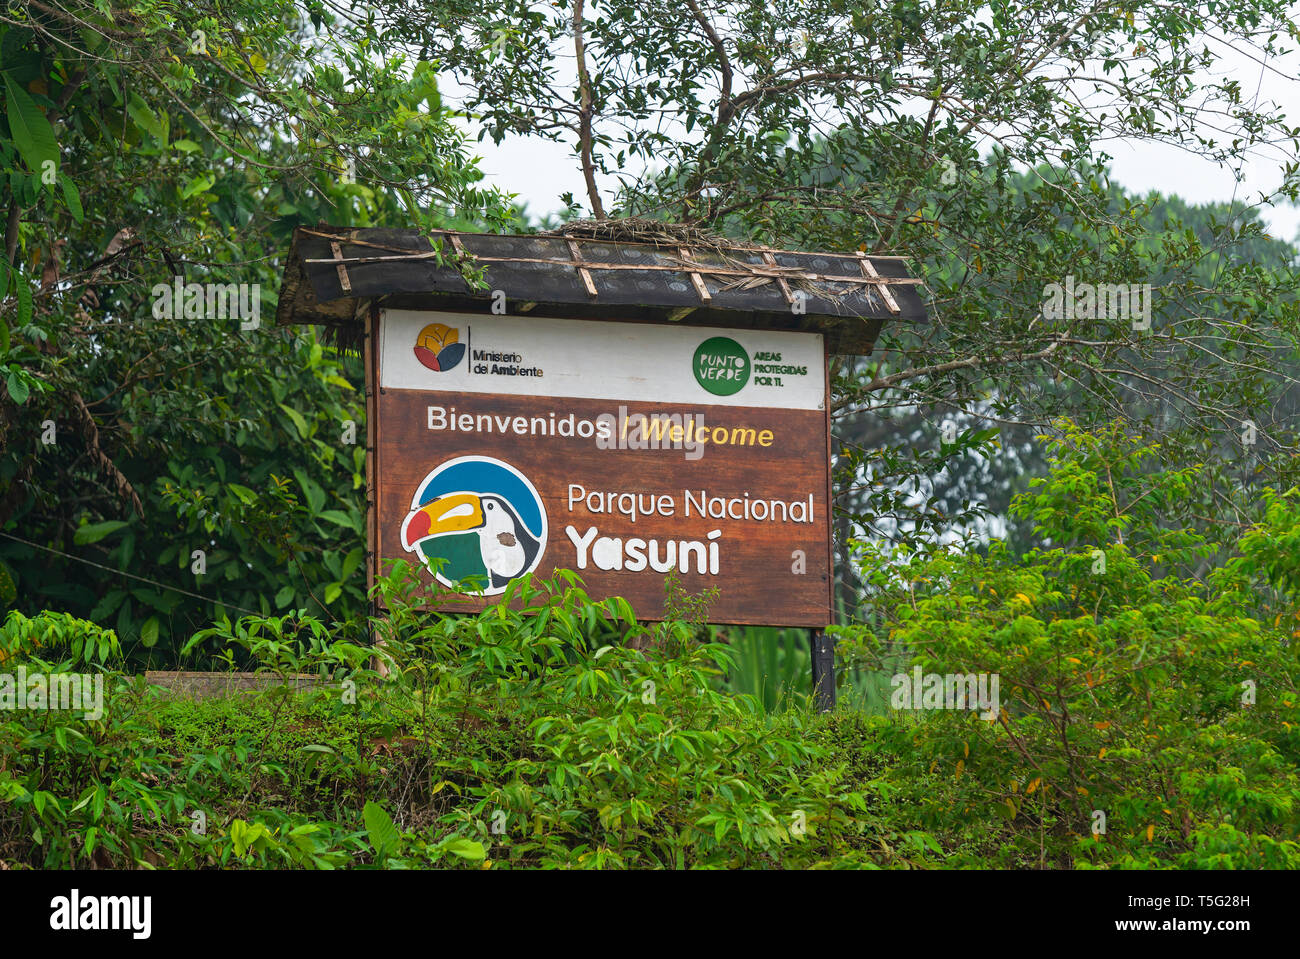 Eingangsschild des Yasuni National Park im Amazonas-Regenwald-Becken von Ecuador. Einer der artenreichsten Orte im südamerikanischen Dschungel. Stockfoto